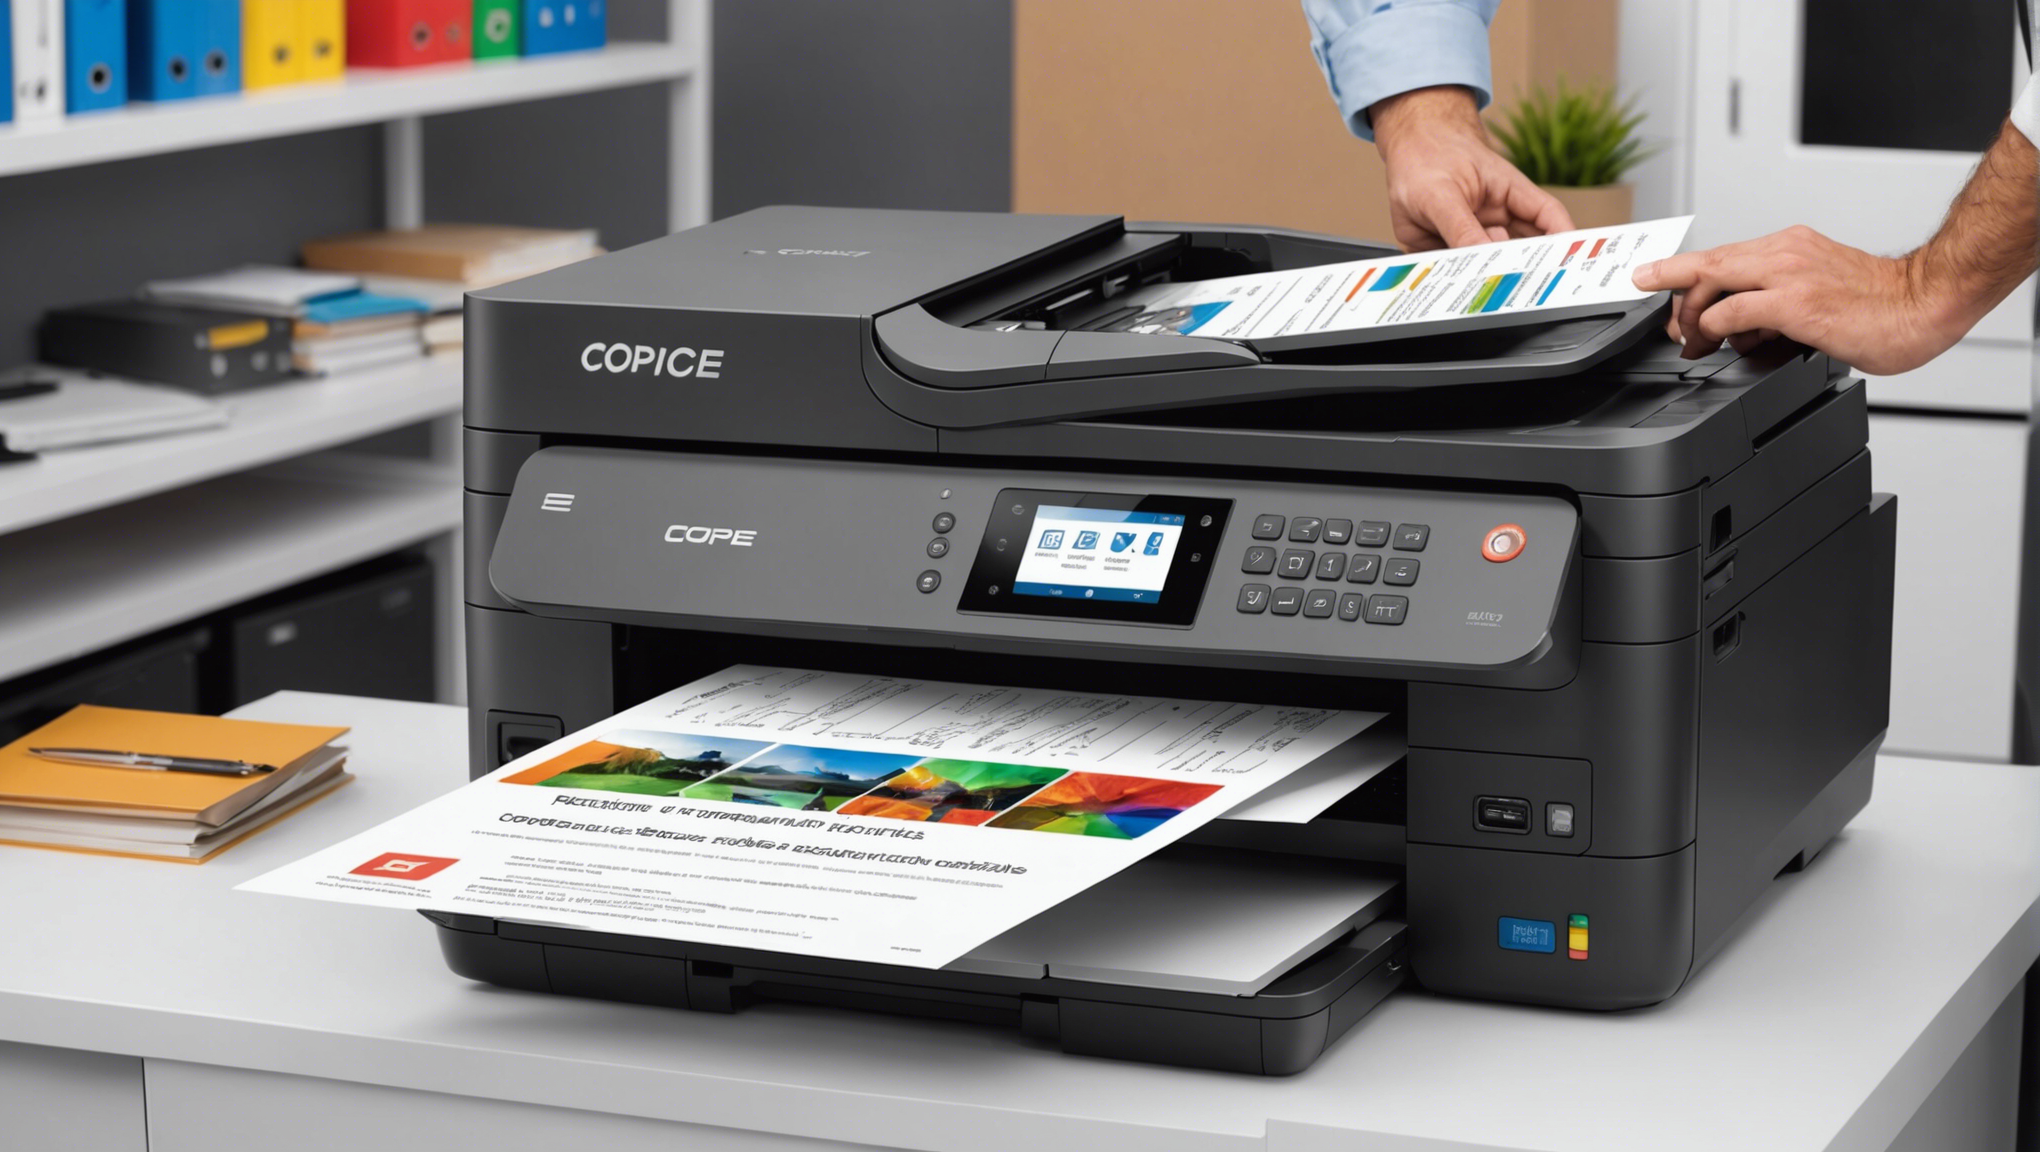 découvrez nos imprimantes professionnelles offrant des fonctions de copie avancées à un prix abordable. trouvez la solution parfaite pour vos besoins d'impression professionnelle.